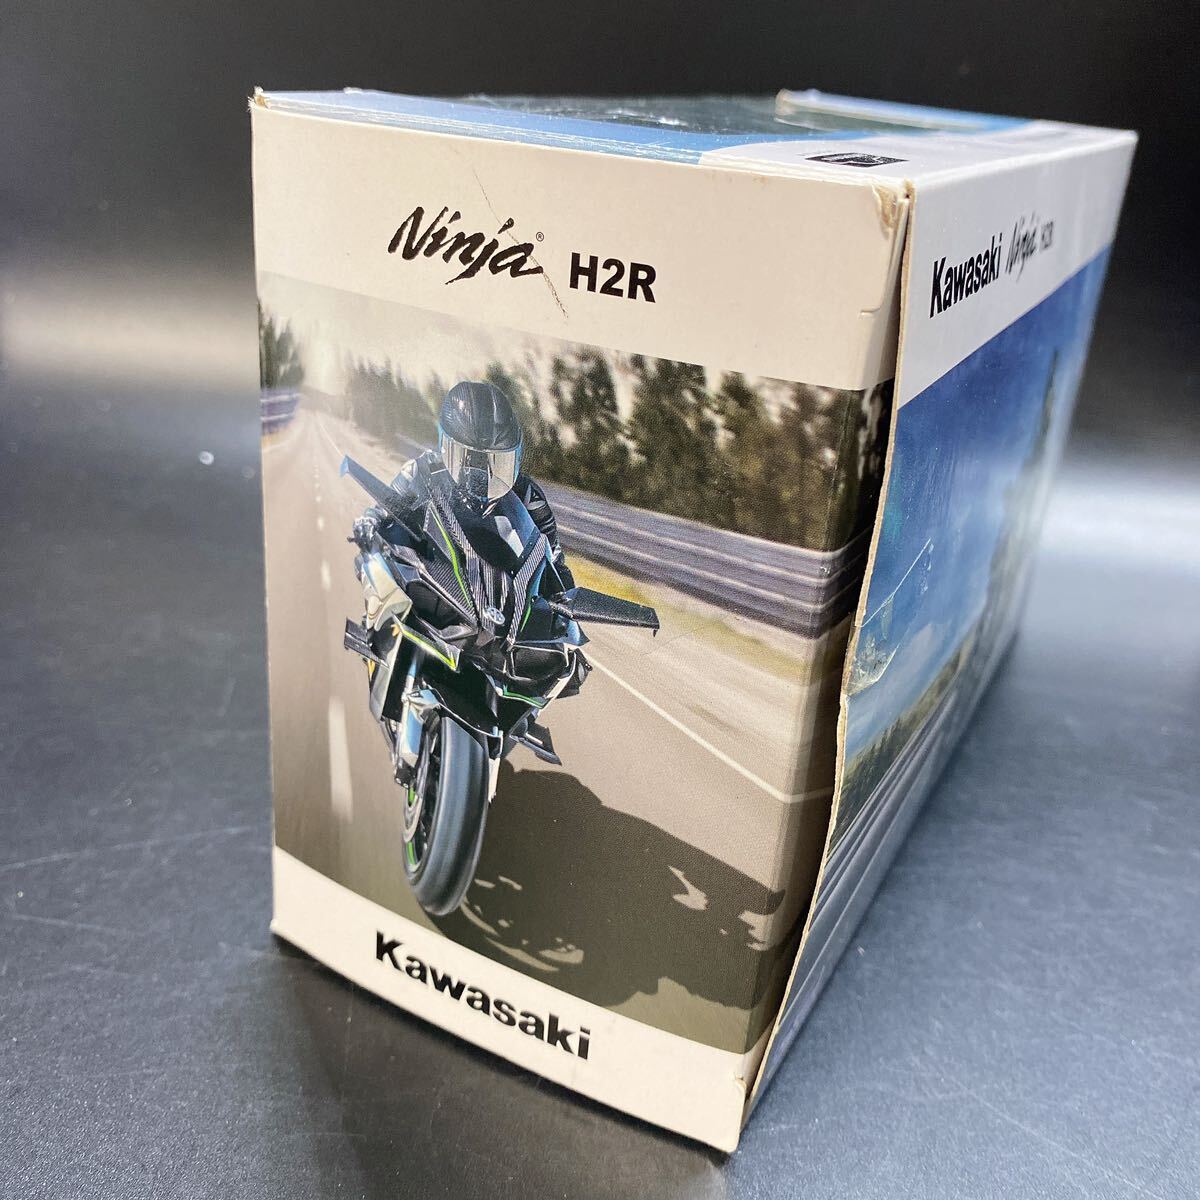 アオシマ 1/12 完成品バイクシリーズ カワサキ Kawasaki Ninja H2R ミニカー 稀少 レア スカイネット 開封済み 現状品の画像5